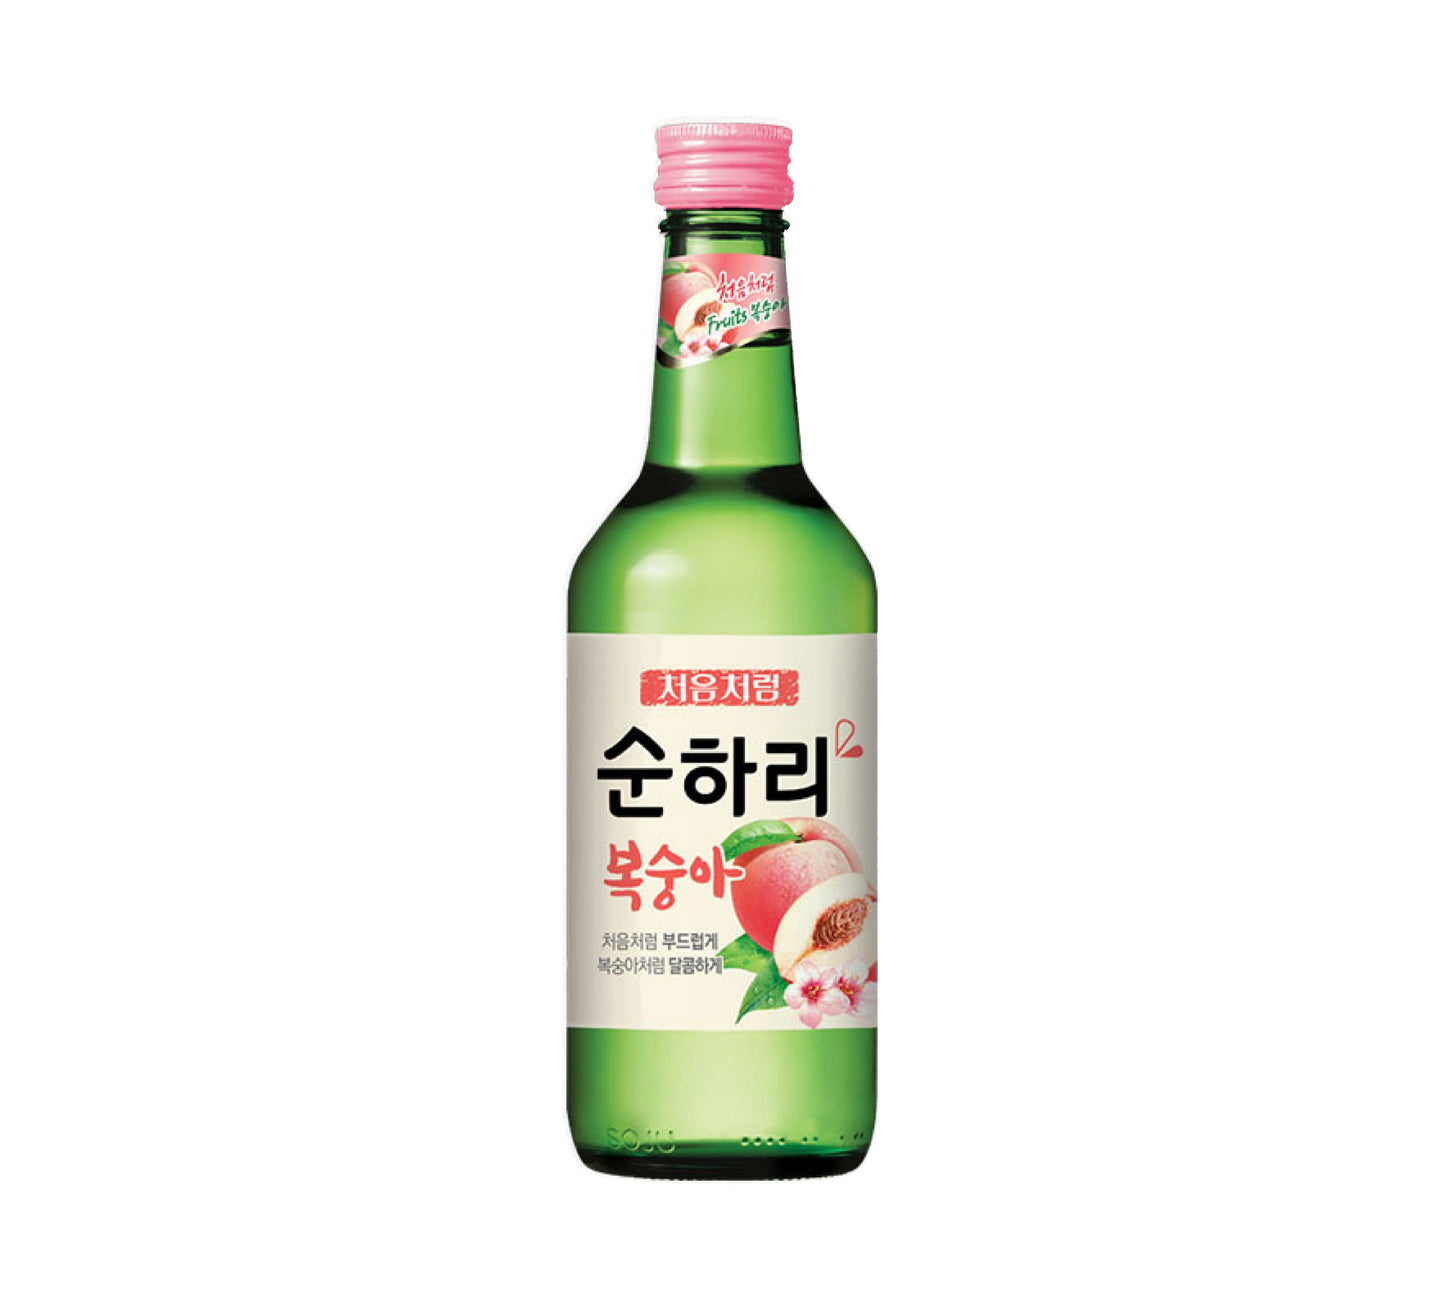 Lotte Chum Churum Soju Peach Flavour 12% (360 ml)